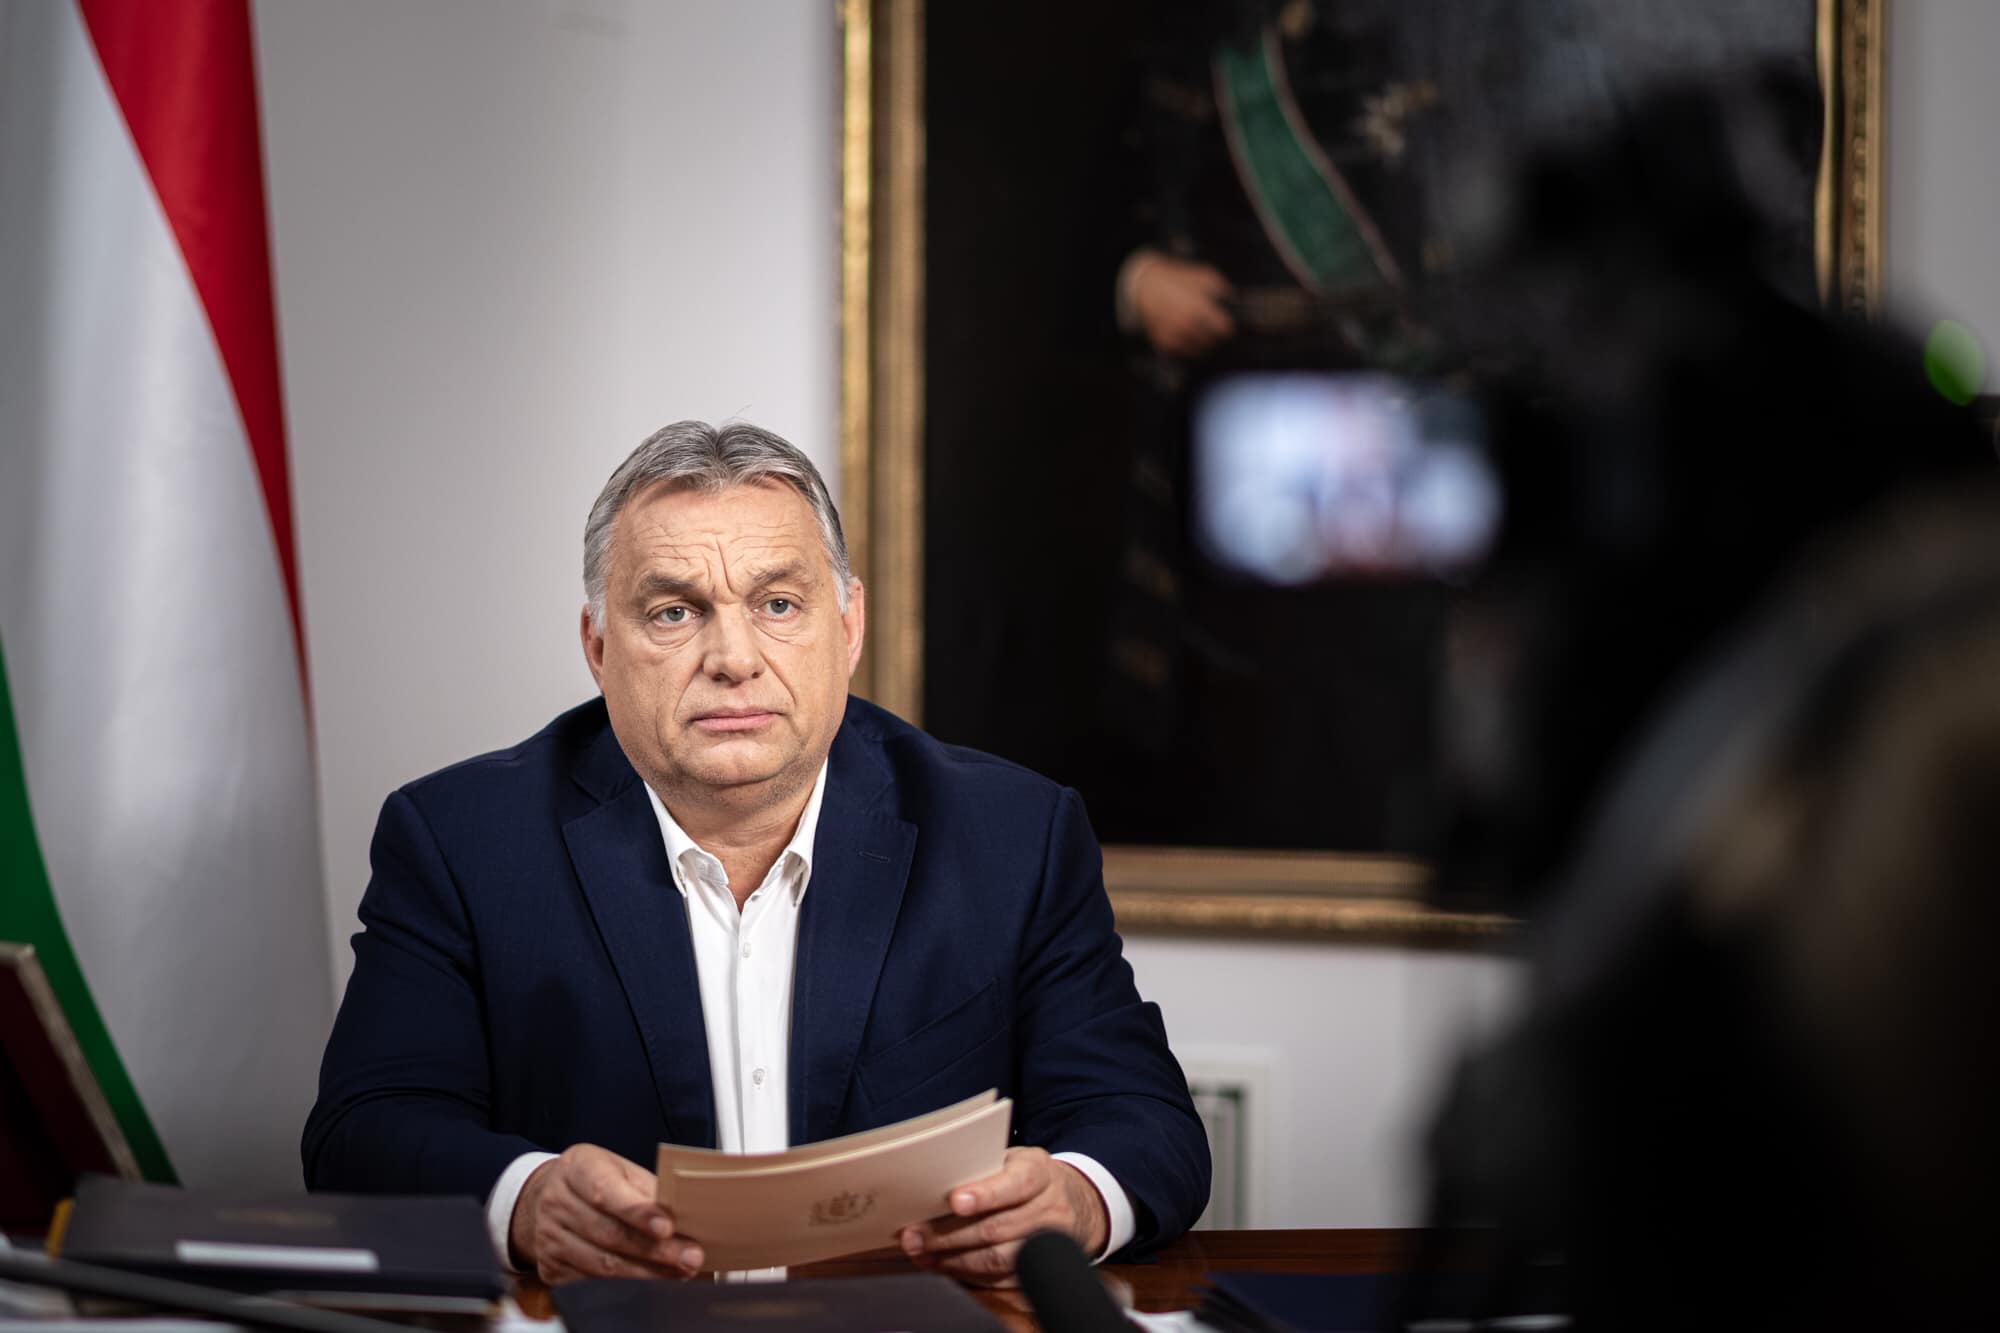 Nemzetközi sajtóvisszhang: az orosz hírügynökség szerint Orbán megtalálta a megfelelő irányt az ukrajnai konfliktusban